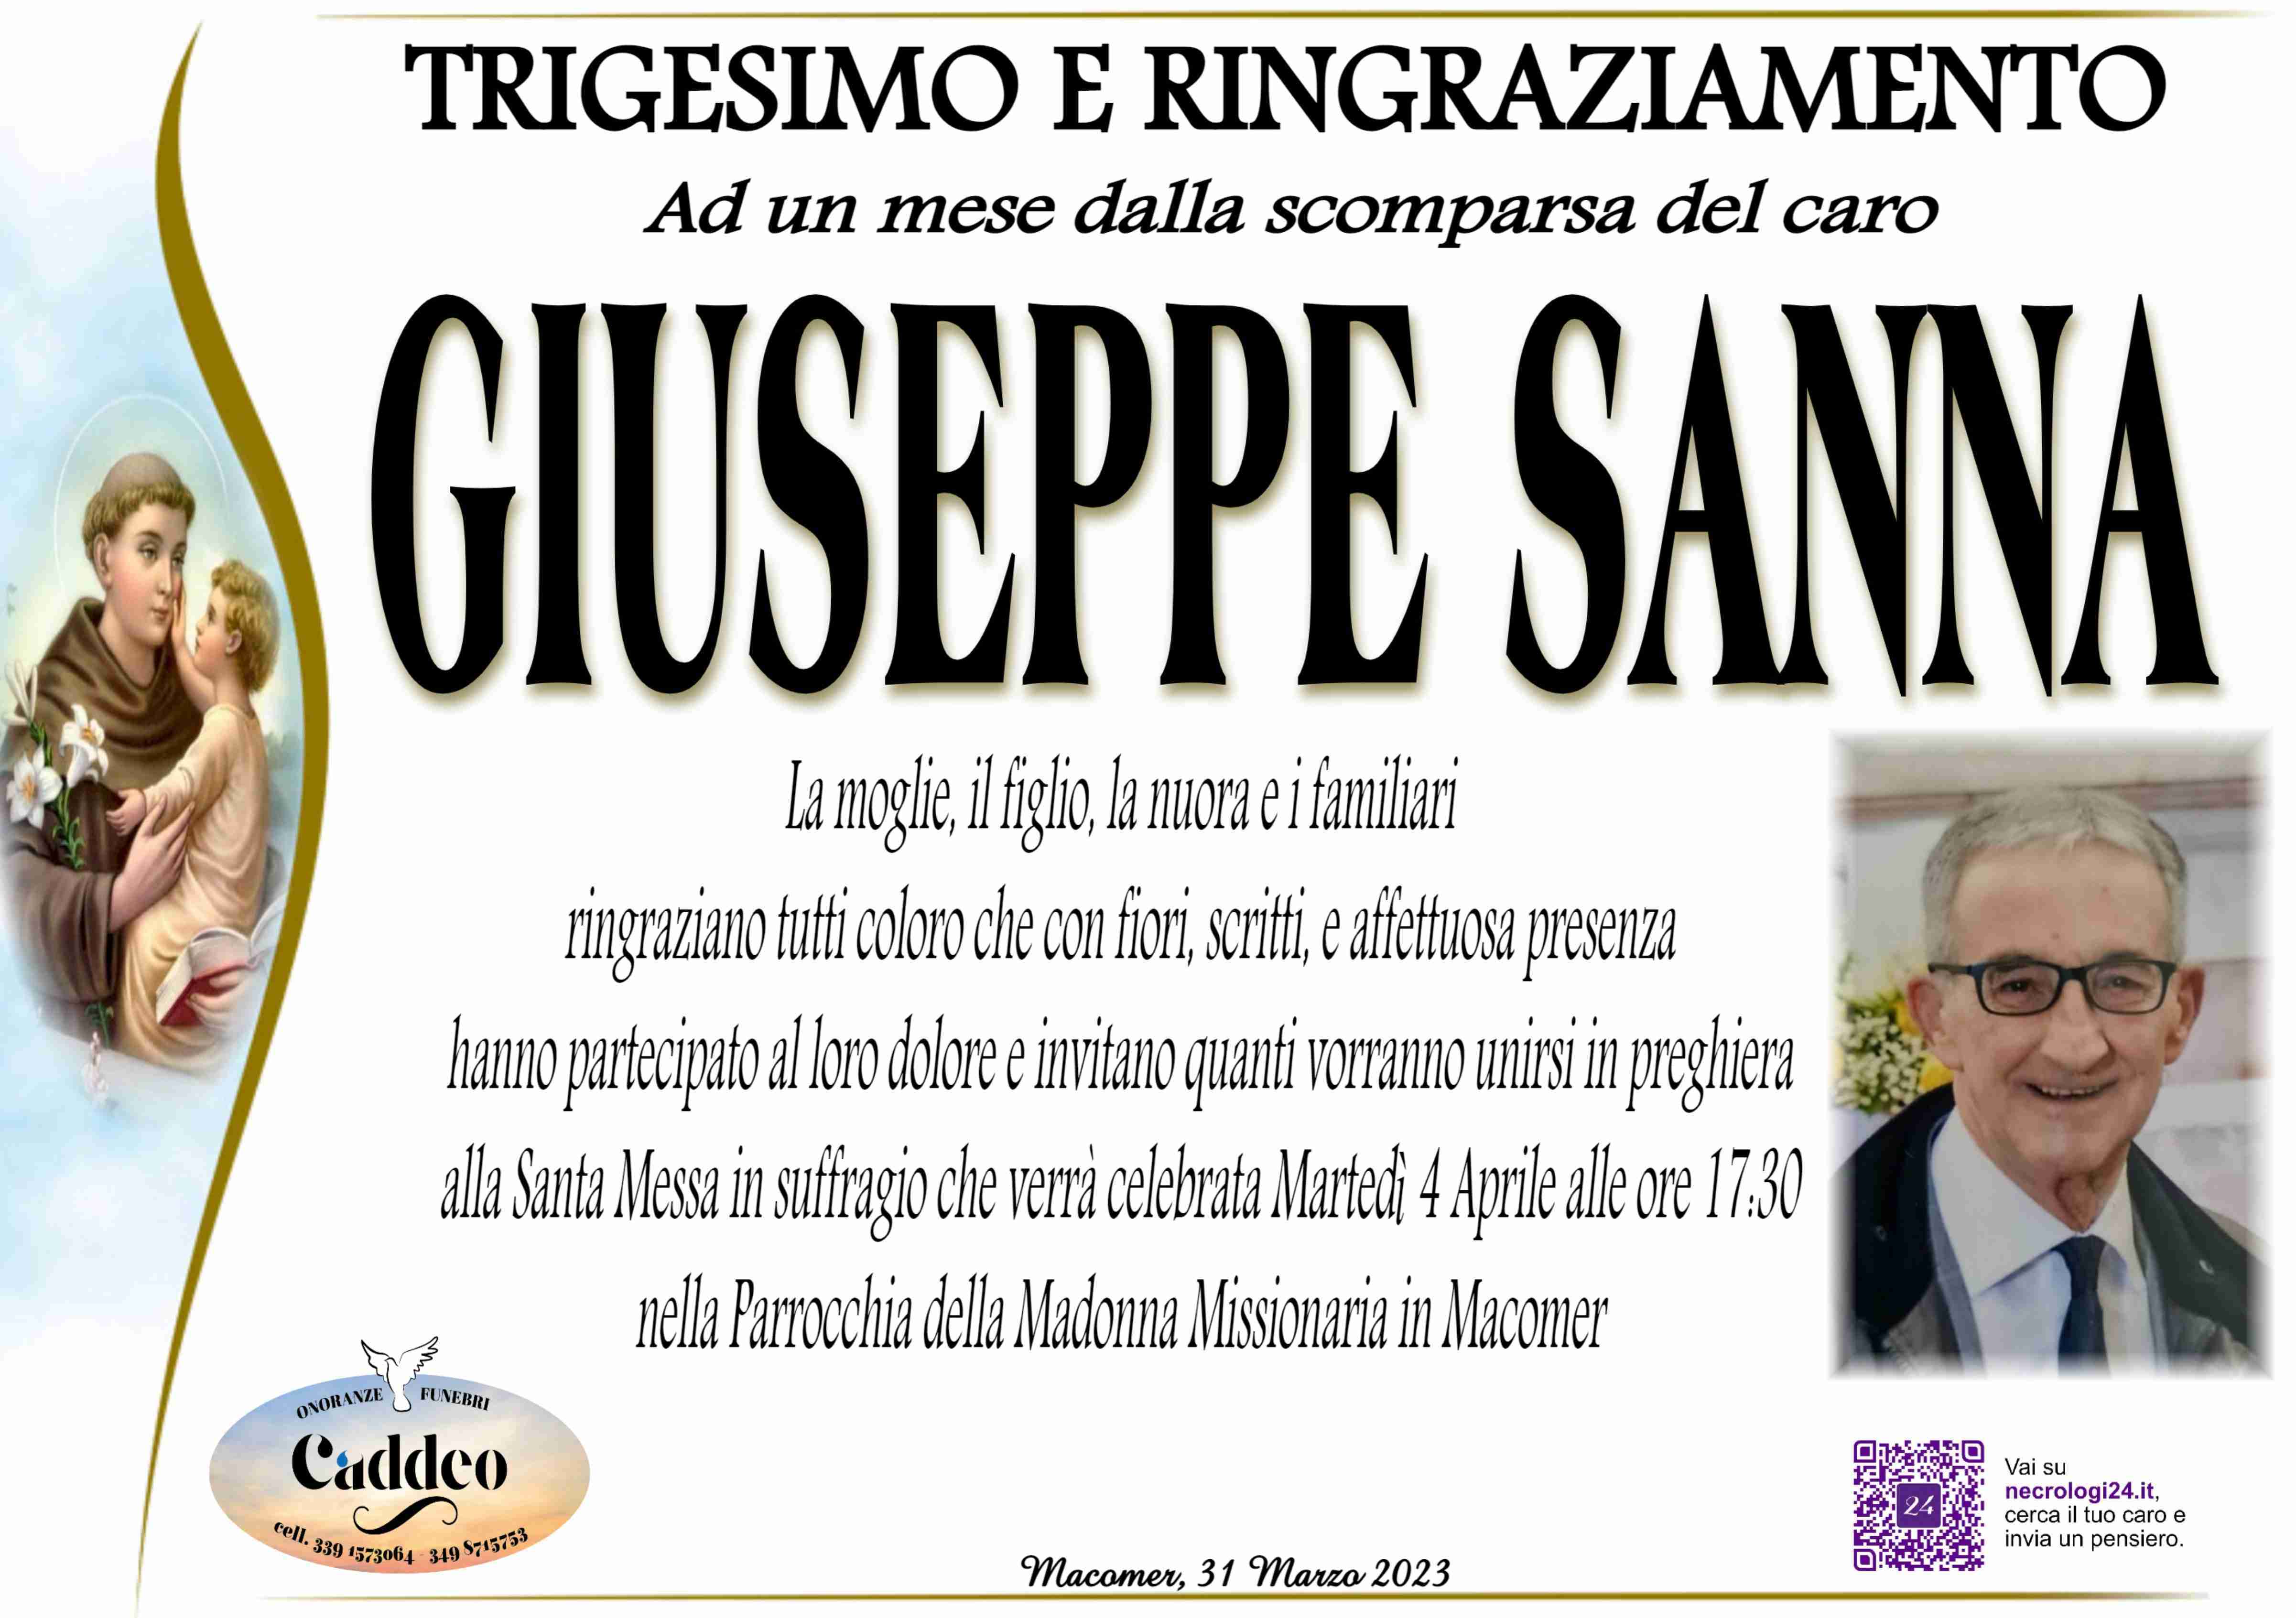 Giuseppe Sanna